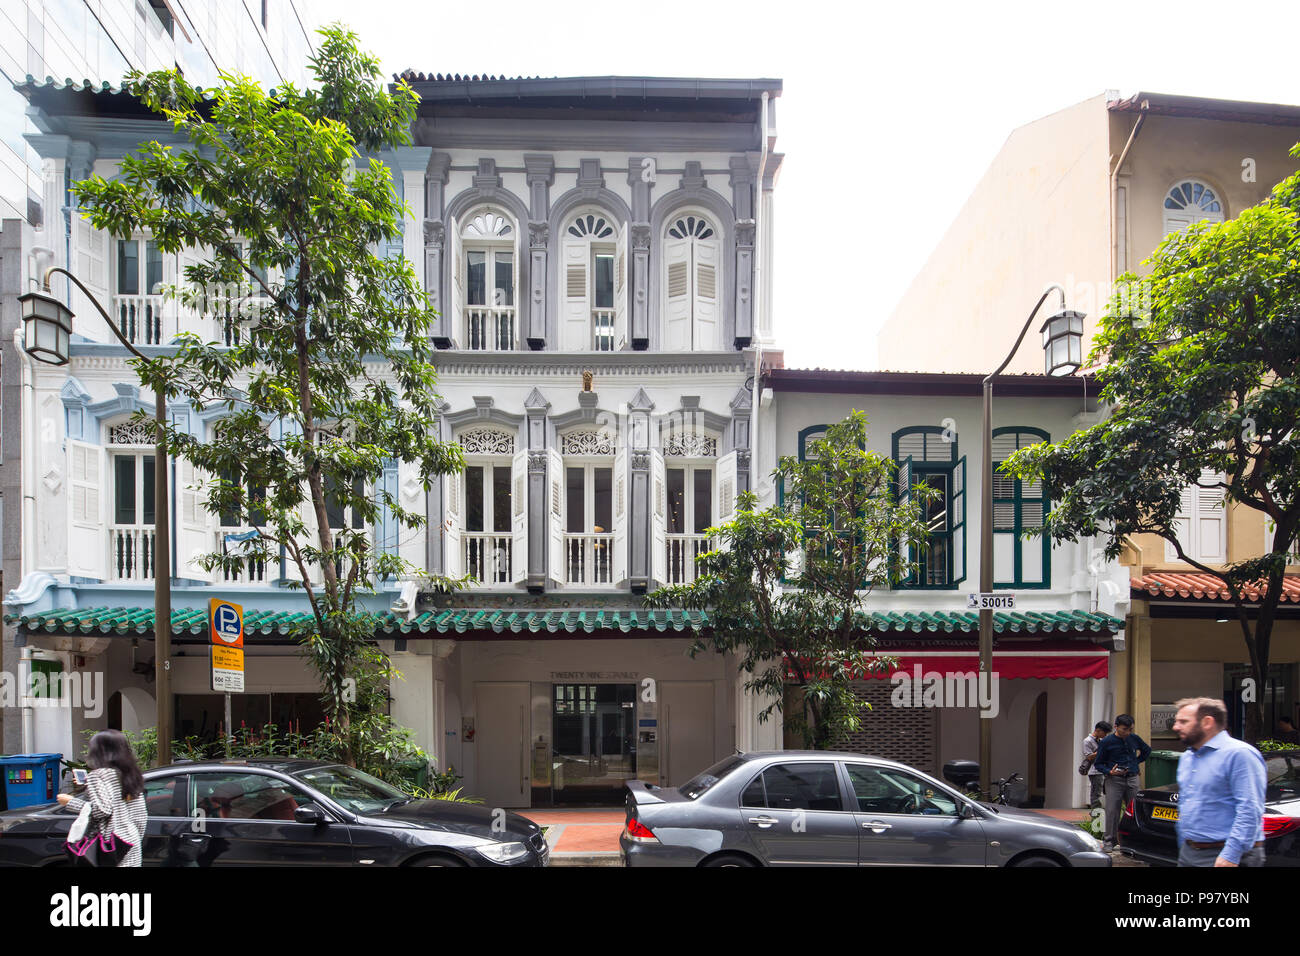 Des magasins rajeunis le long d'une rue Stanley très animée. Singapour. Banque D'Images